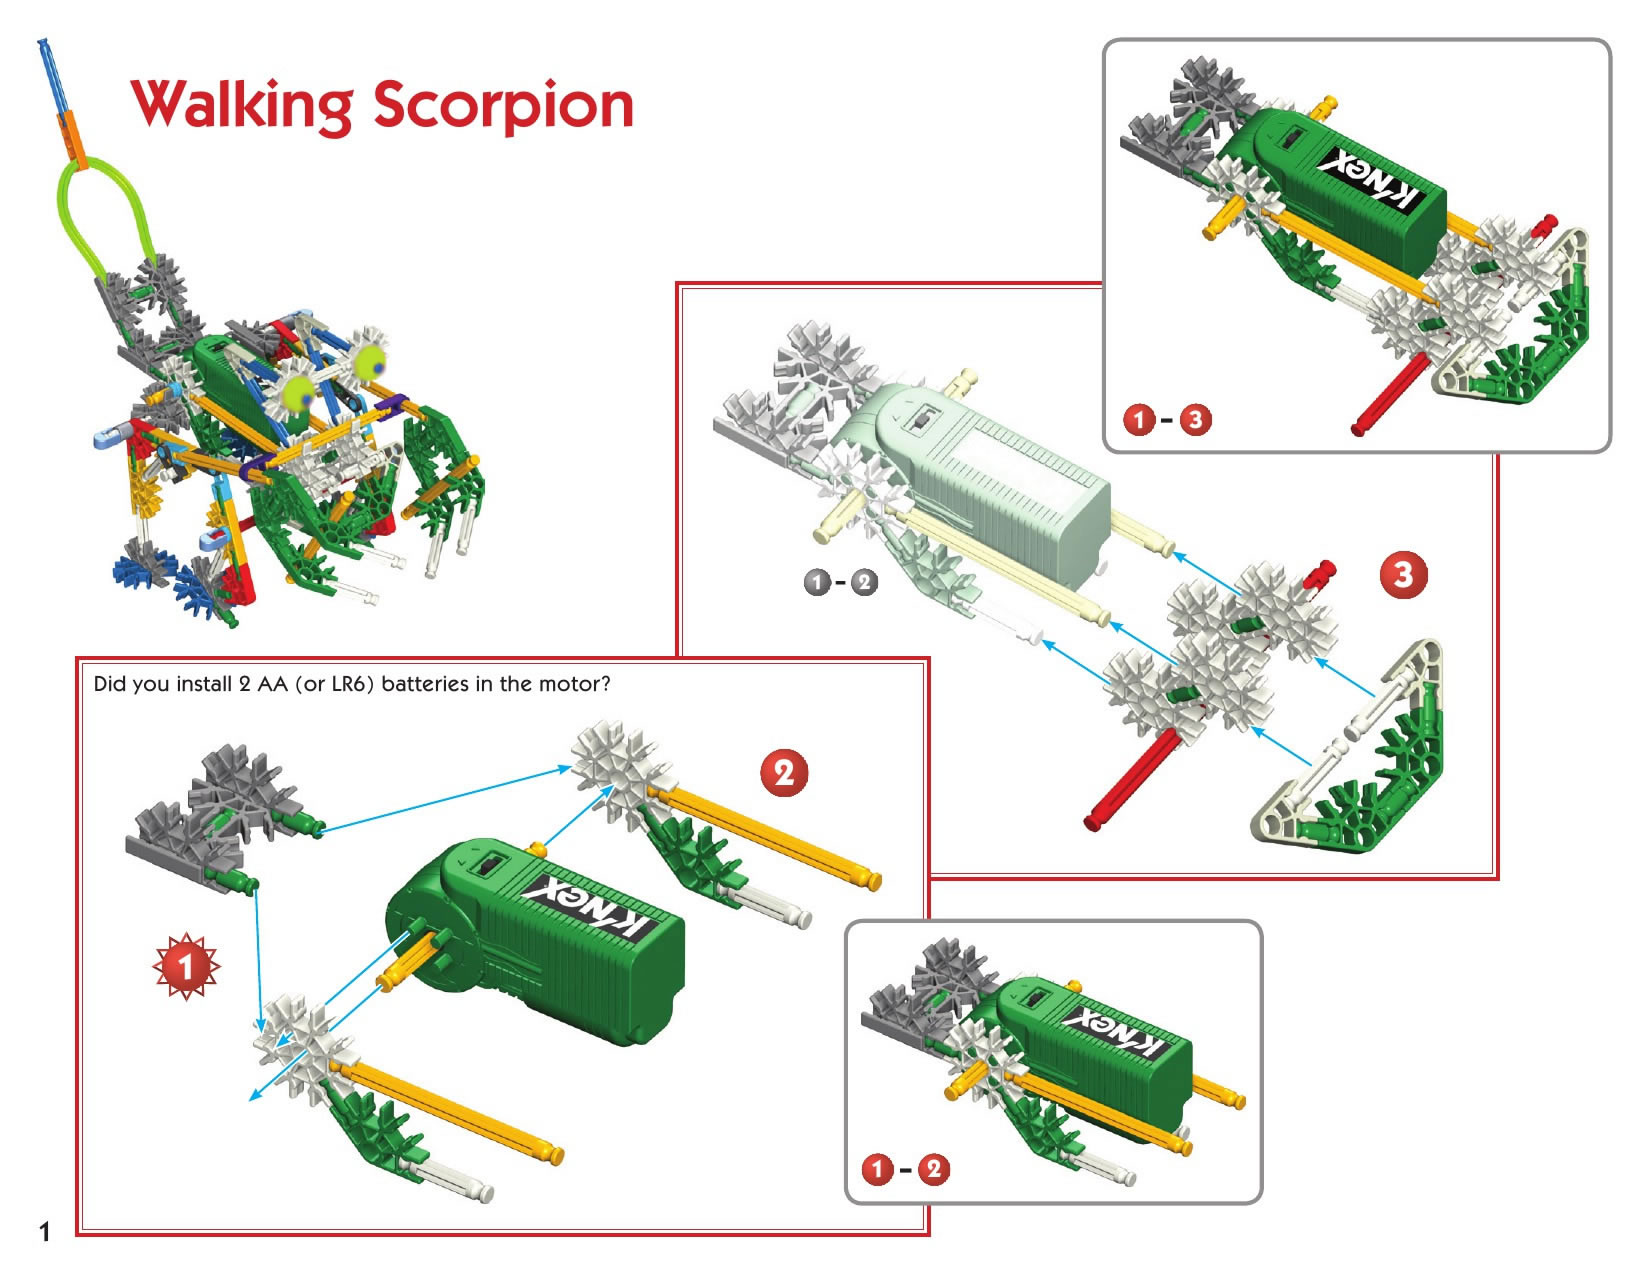 Walking Scorpion page 1